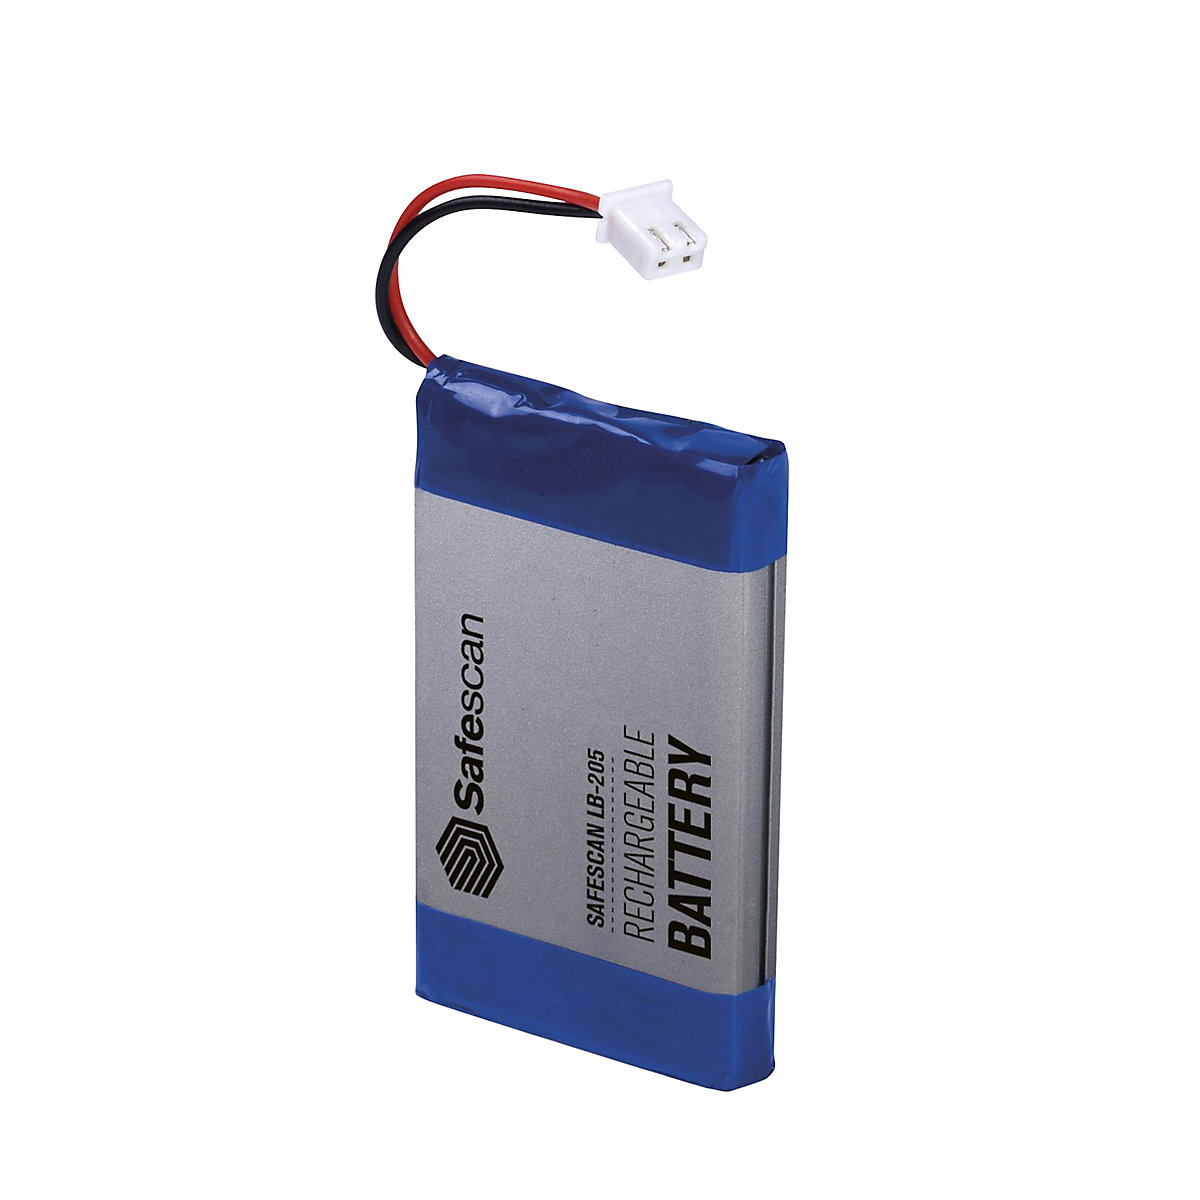 Bateria recarregável – Safescan